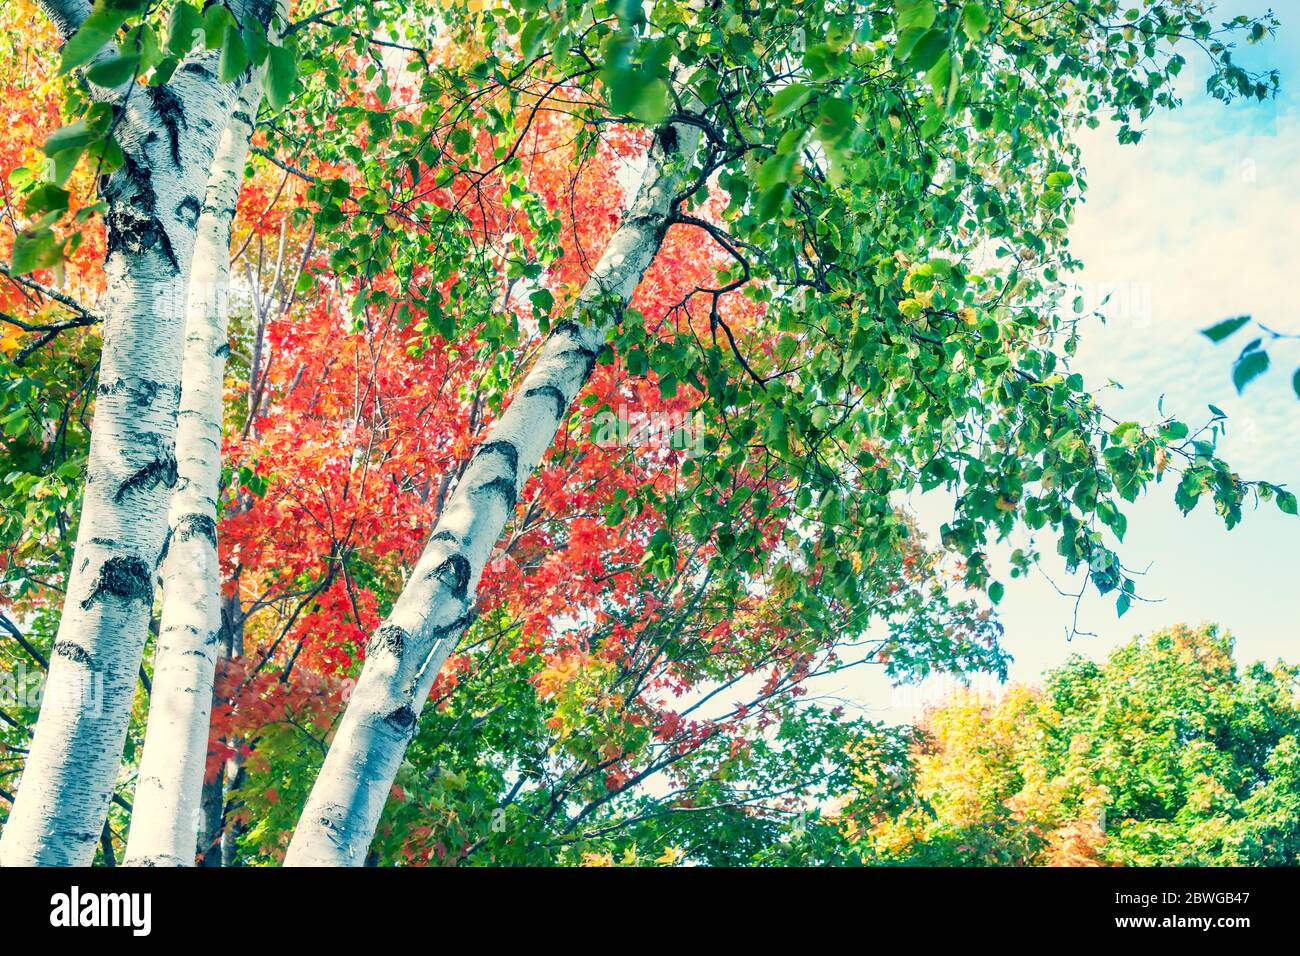 Tronchi bianchi luminosi di betulla contro colori brillanti del fogliame autunnale del New England cadono dal punto di vista basso angolo di immagine elaborata incrociata Foto Stock